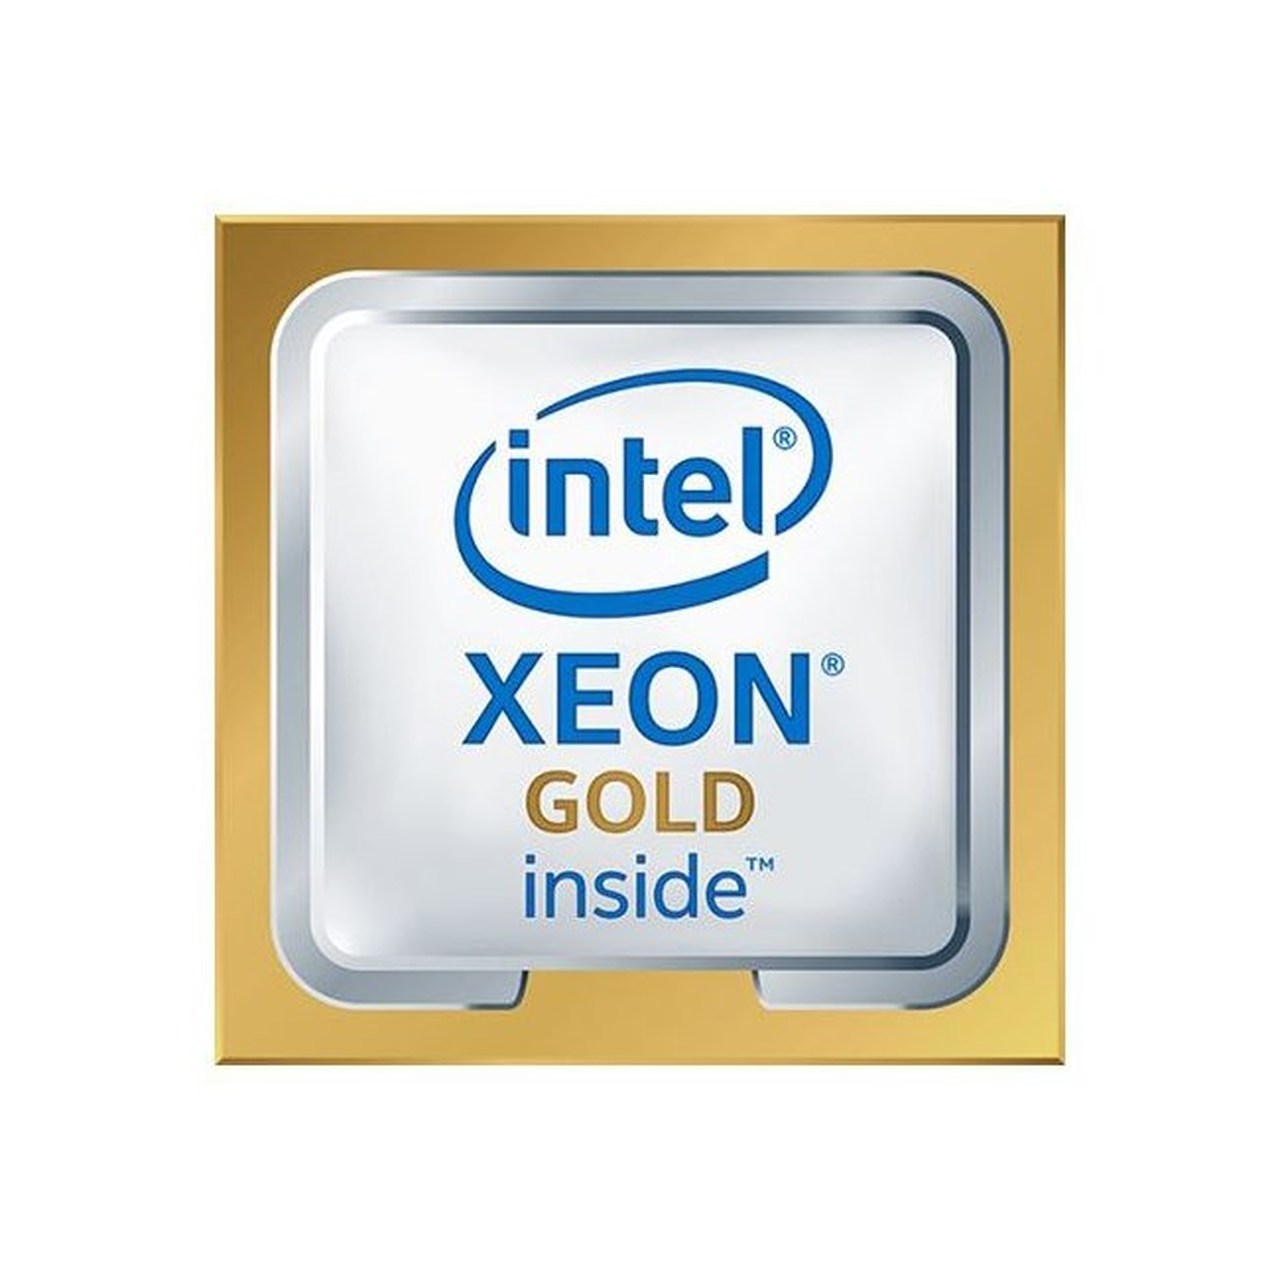 Процессор Intel Xeon Gold 5220 FC-LGA3647 ОЕМ (CD8069504214601SRFBJ) процессор intel xeon gold 5220 lga 3647 25mb 2 2ghz cd8069504214601s rfbj